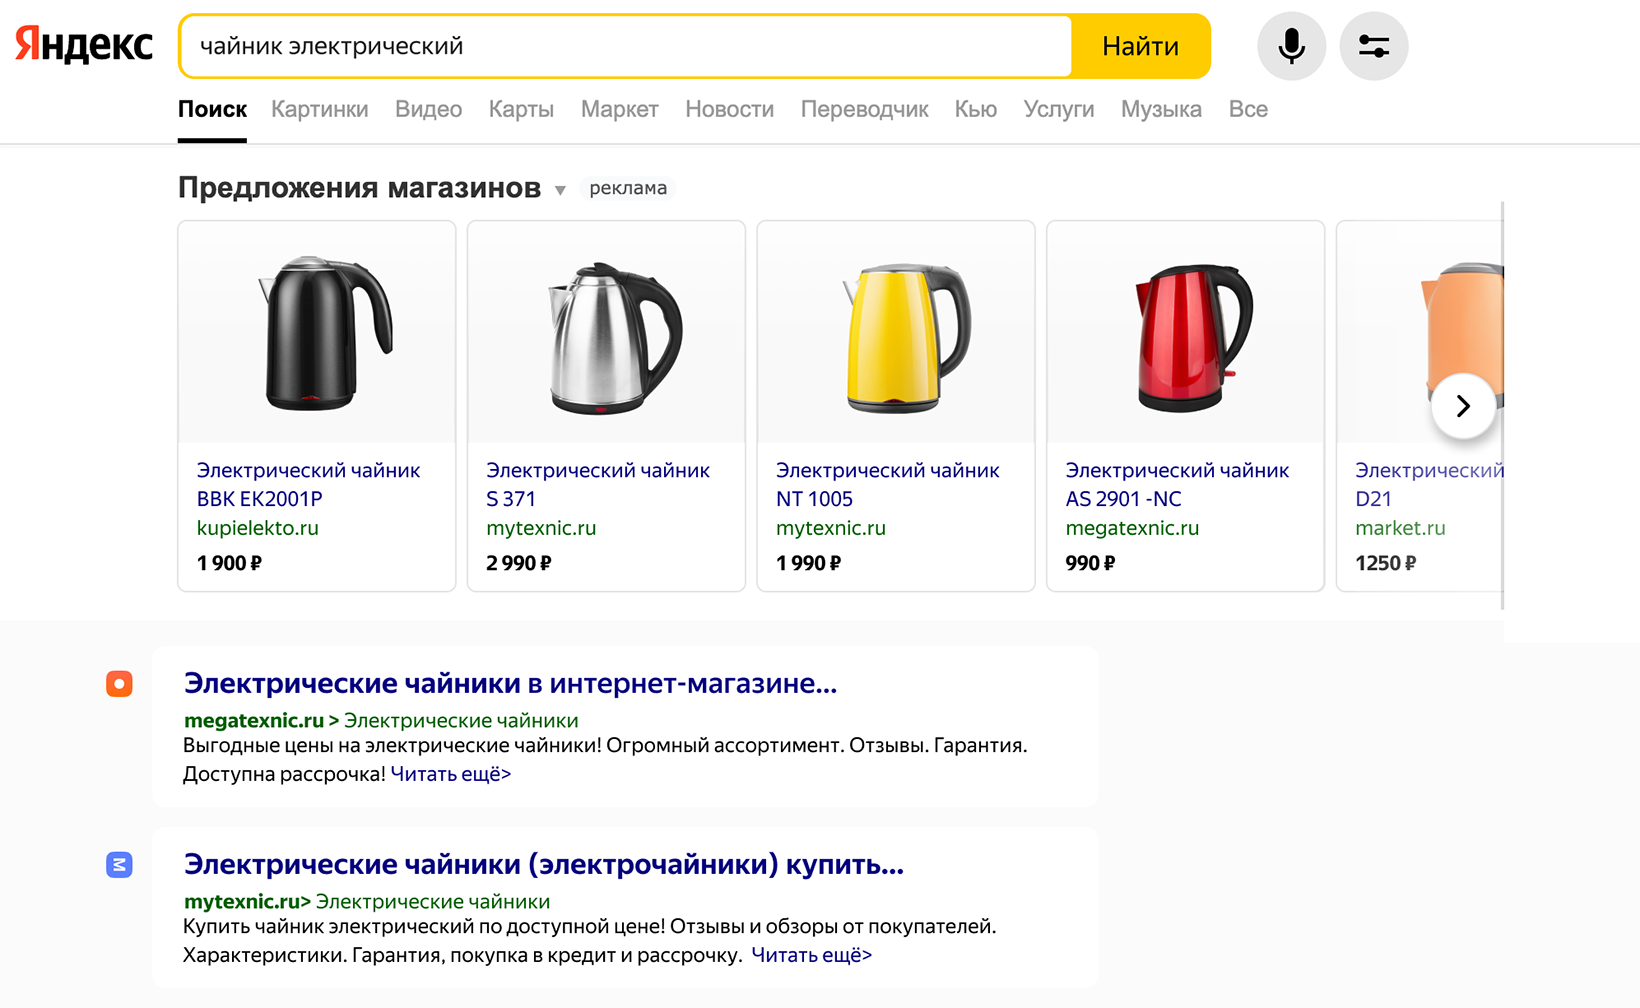 Yandex ru search ads ask video